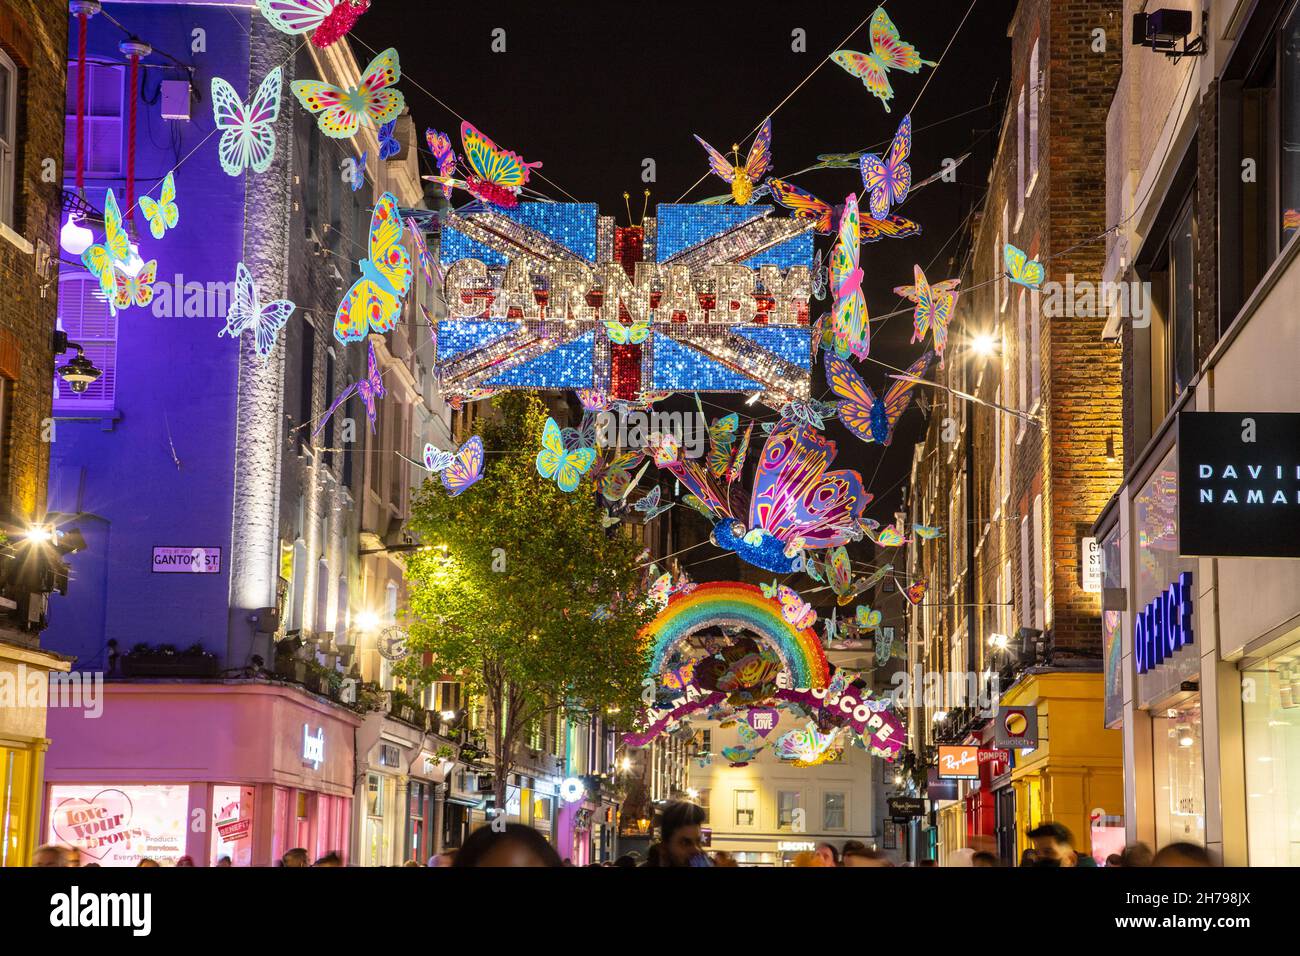 LONDRA, UK - 20 NOVEMBRE 2021: Viste lungo Carnaby Street a Londra a Natale mostrando le decorazioni e fuori dei negozi. Le persone possono essere viste all'esterno Foto Stock